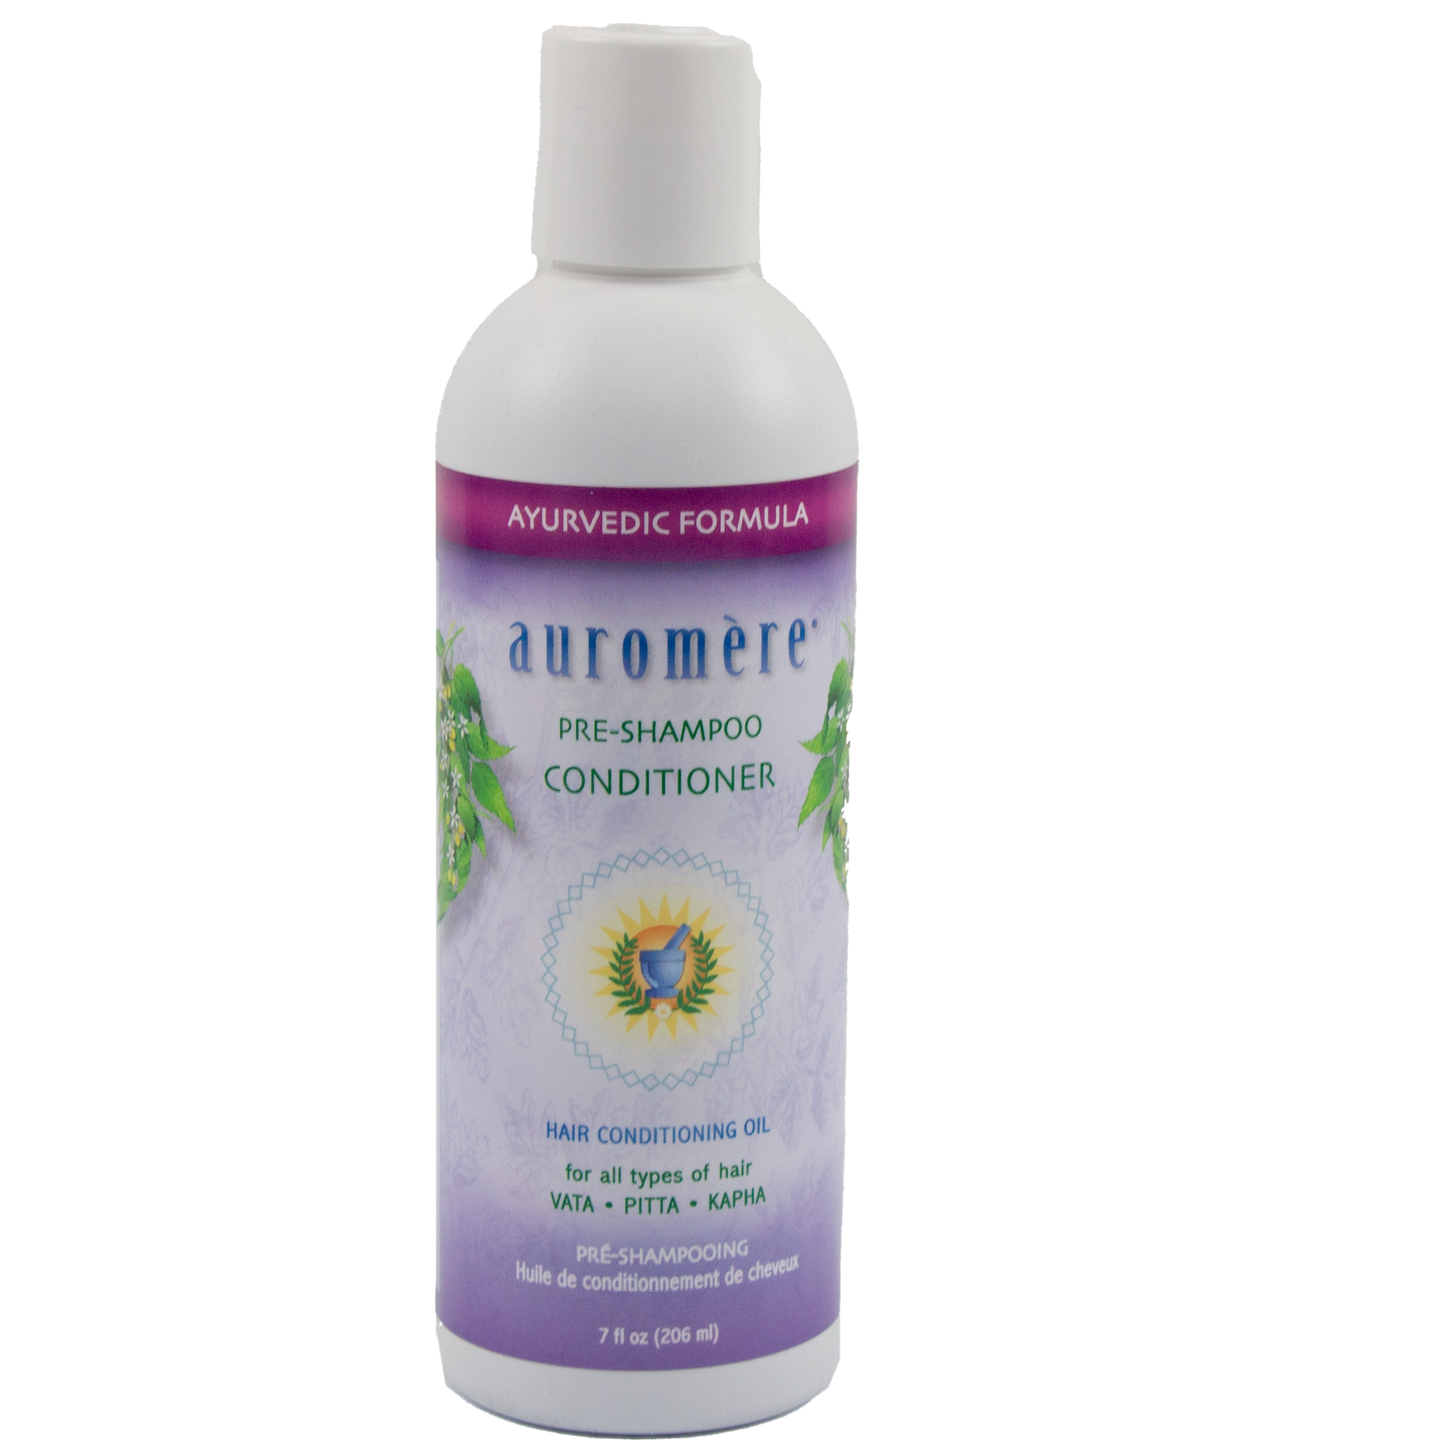 Auromere- Pre-Shampoo Conditioner